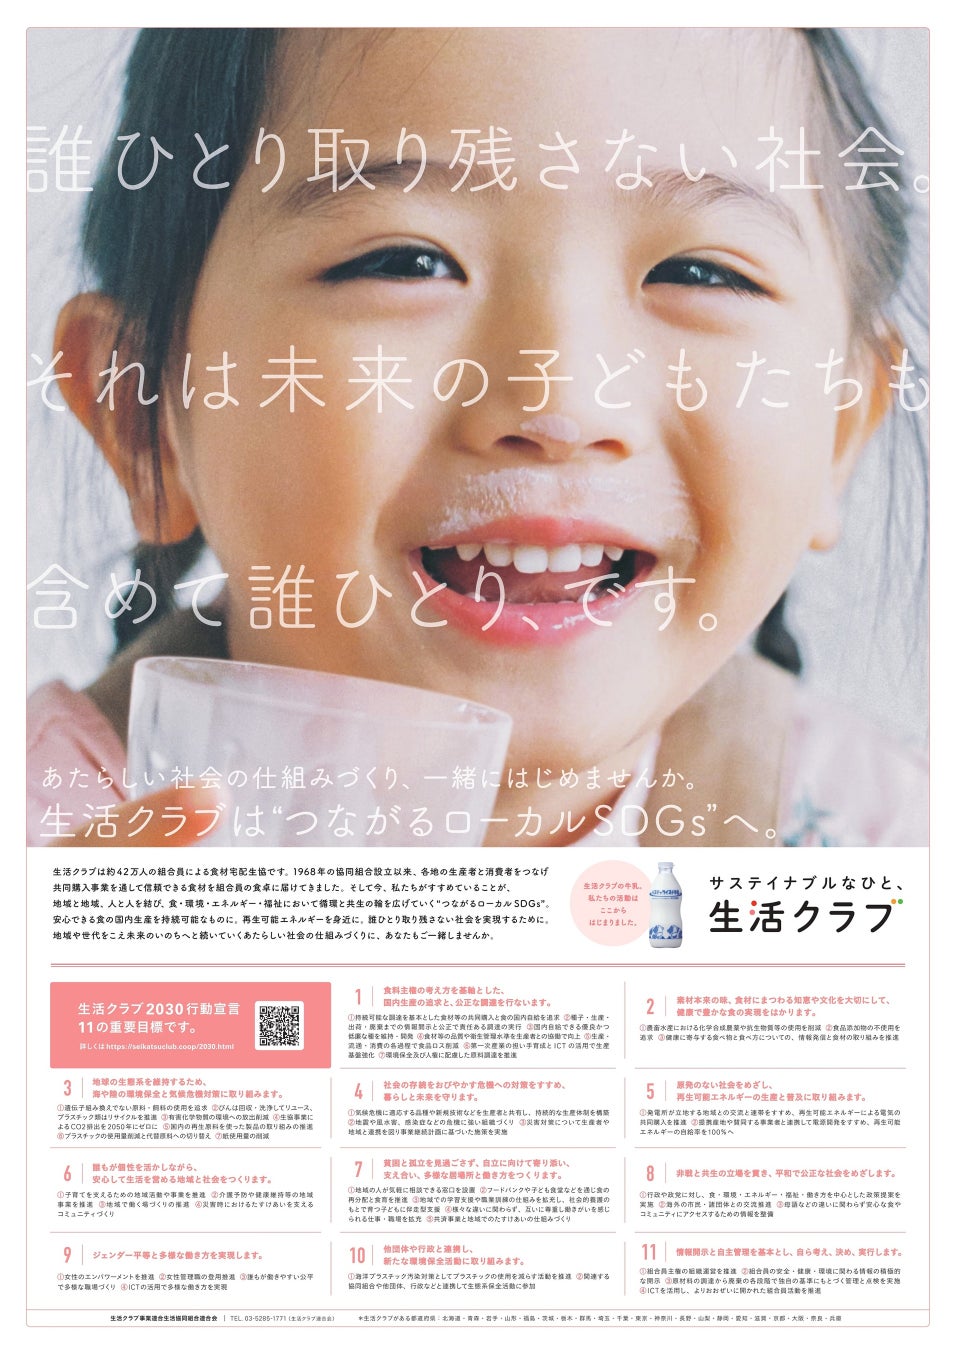 6月27日 日本経済新聞 サステナイブルな社会の実現を目指すメッセージを掲載